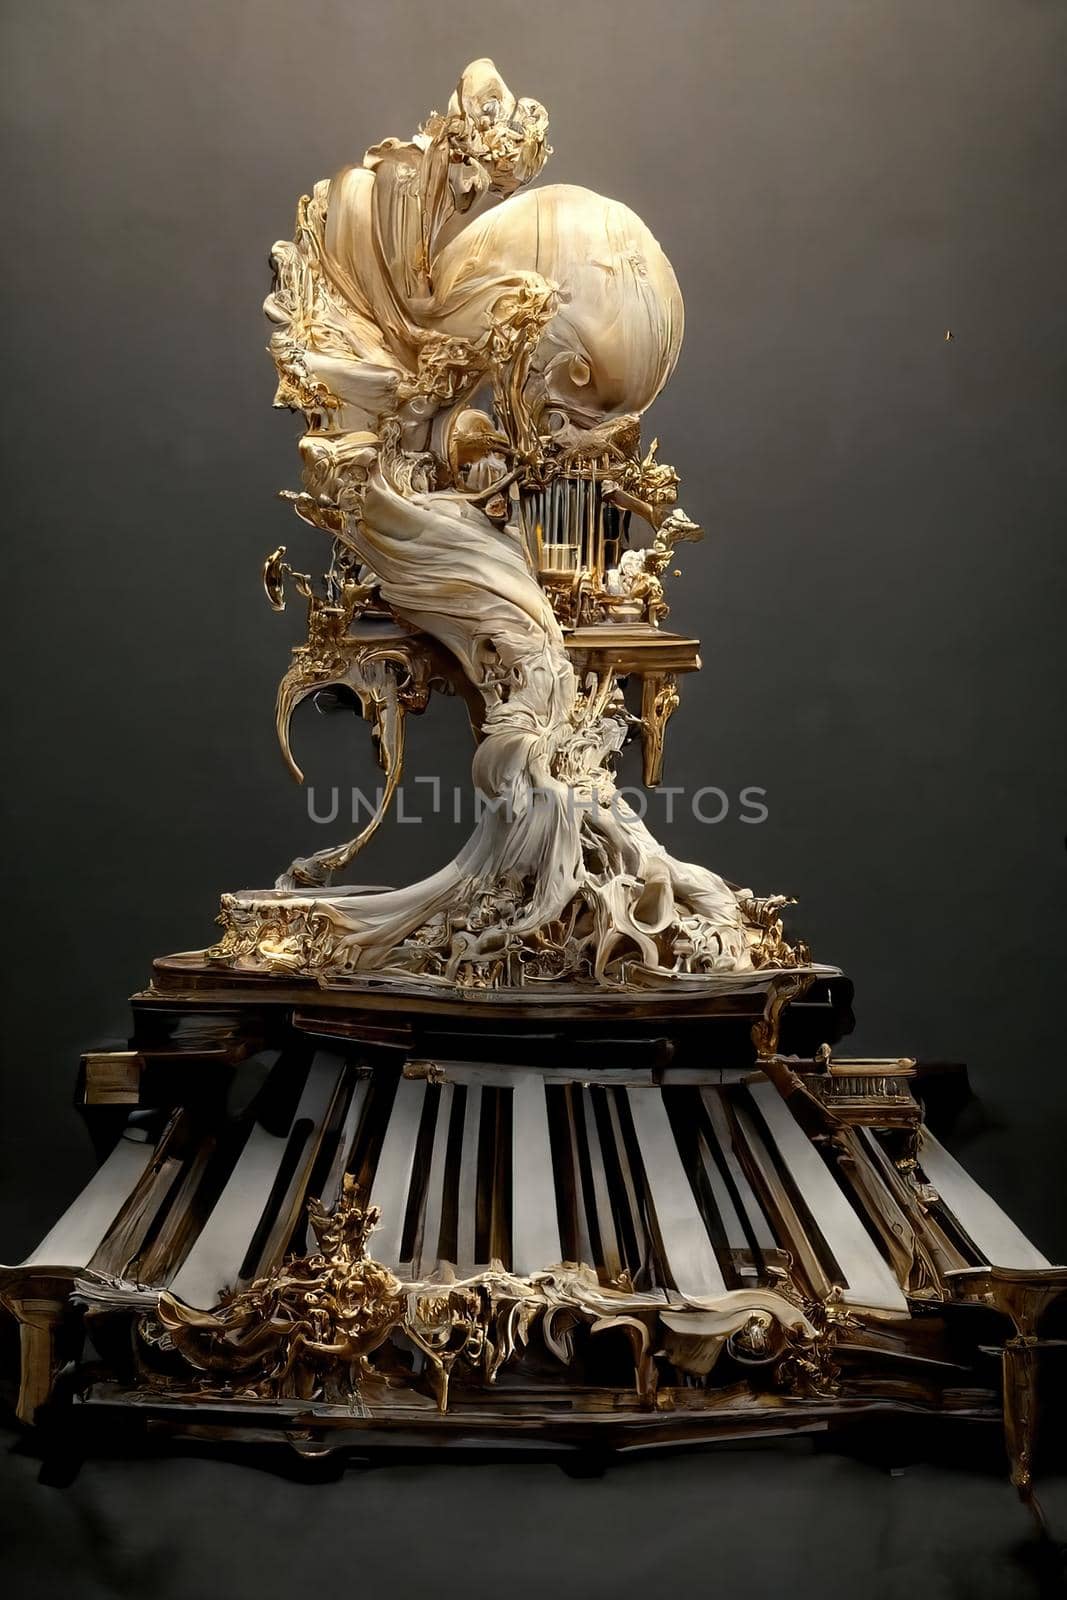 Sculpture of baroque piano, 3d illustration